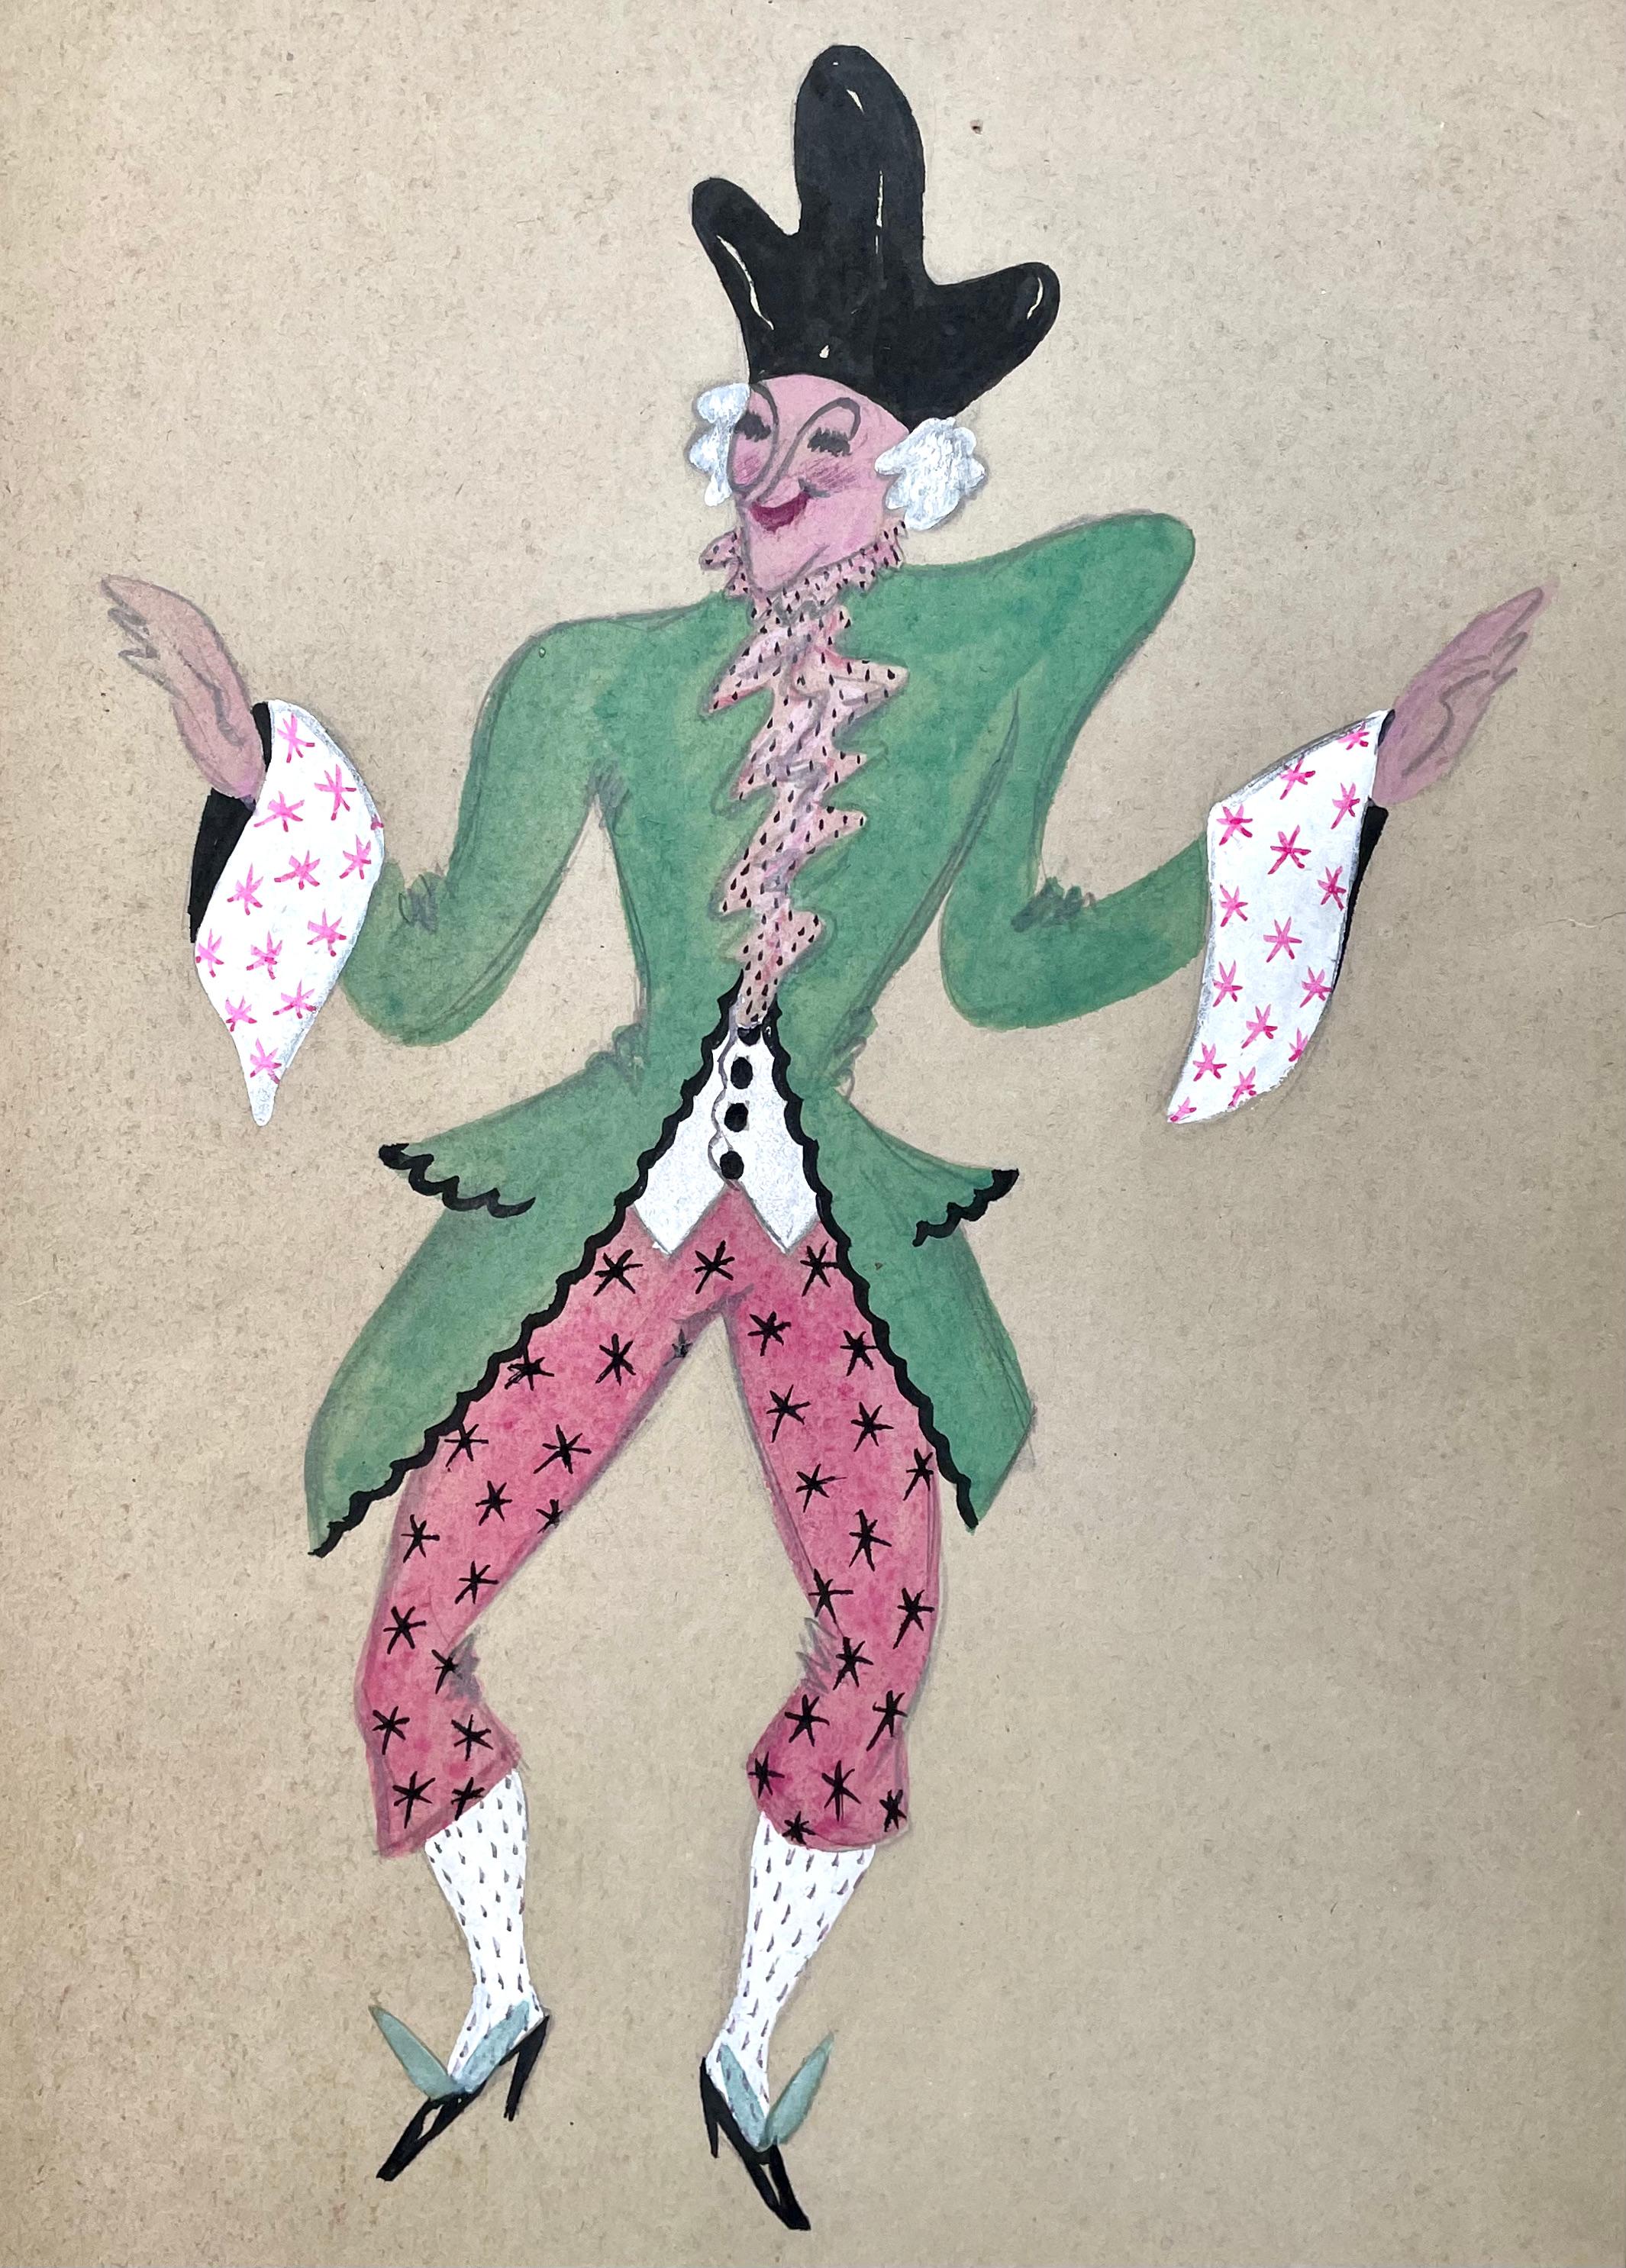 JOHN DRONSFIELD
(1900-1951)

Kostümdesign mit grüner Jacke

Aquarell und Körperfarbe über Bleistift
Ungerahmt, nur im Passepartout

40 x 28,5 cm, 15 ¾  um 11 ¼  in.
(Passepartoutgröße 53 x 41 cm., 20 ¾ x 16 Zoll.)

John Marsden Dronsfield wurde in